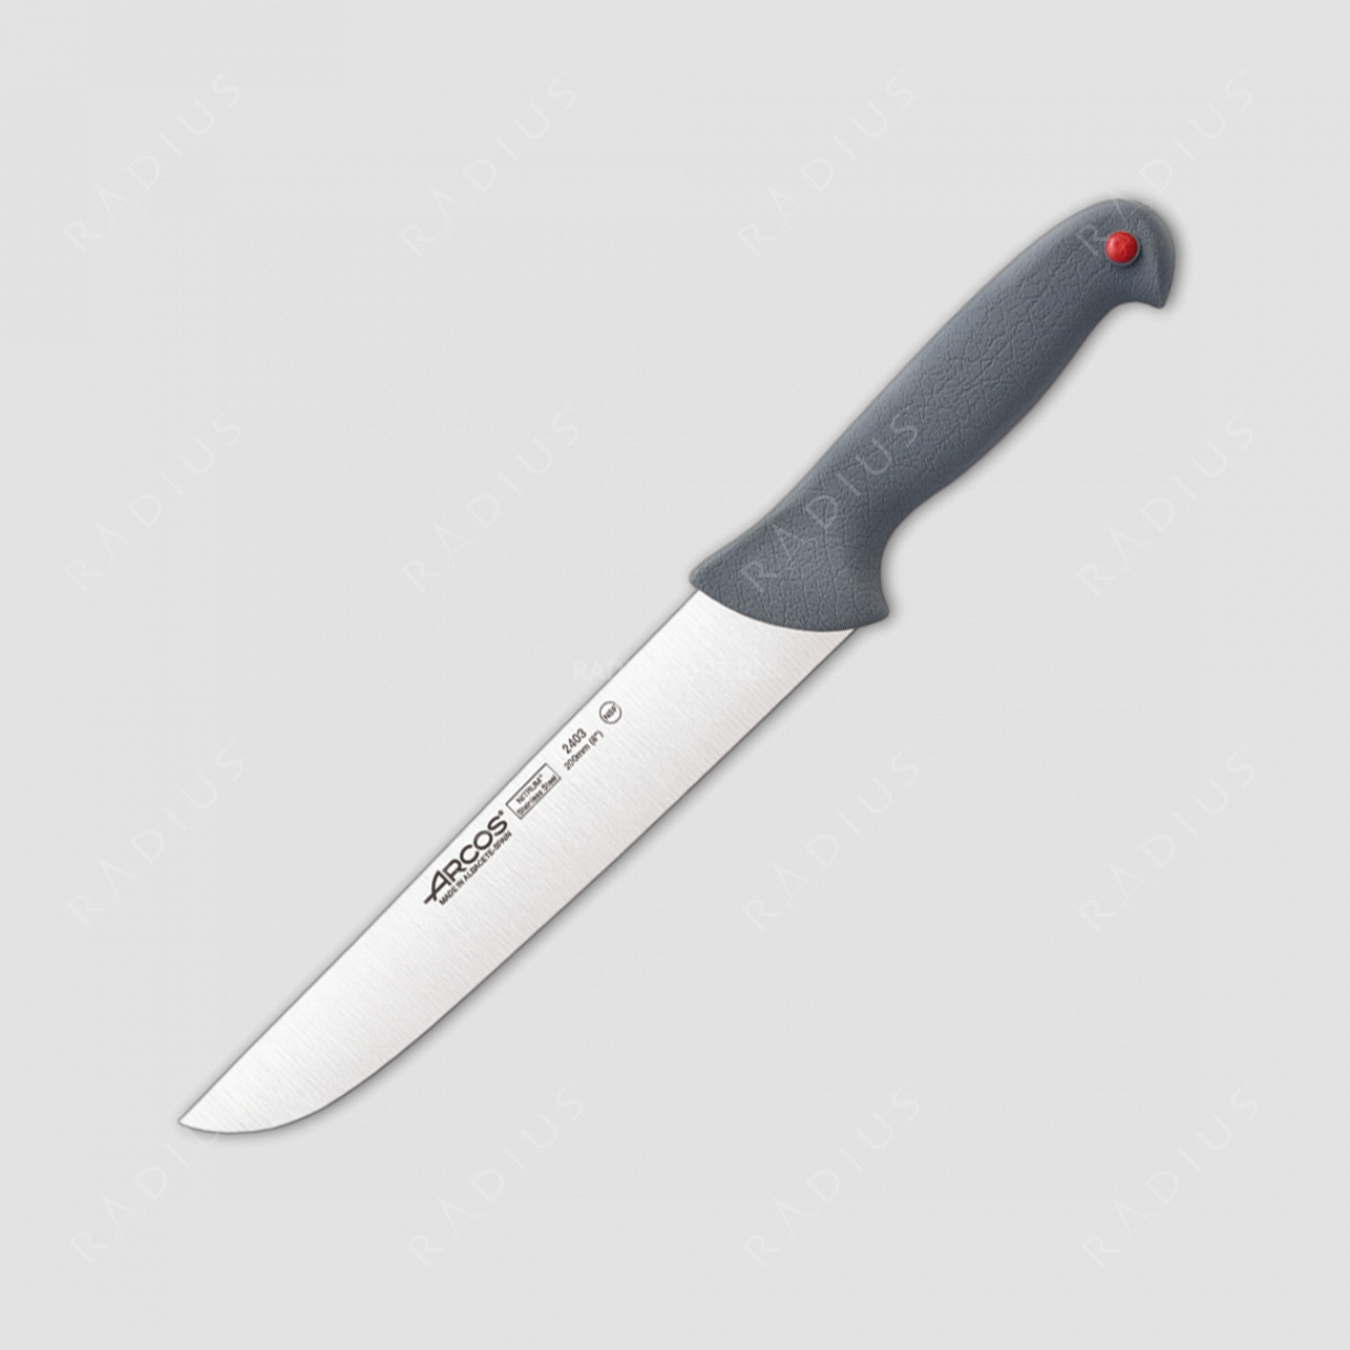 Нож кухонный разделочный 20 см, серия Colour-prof, ARCOS, Испания